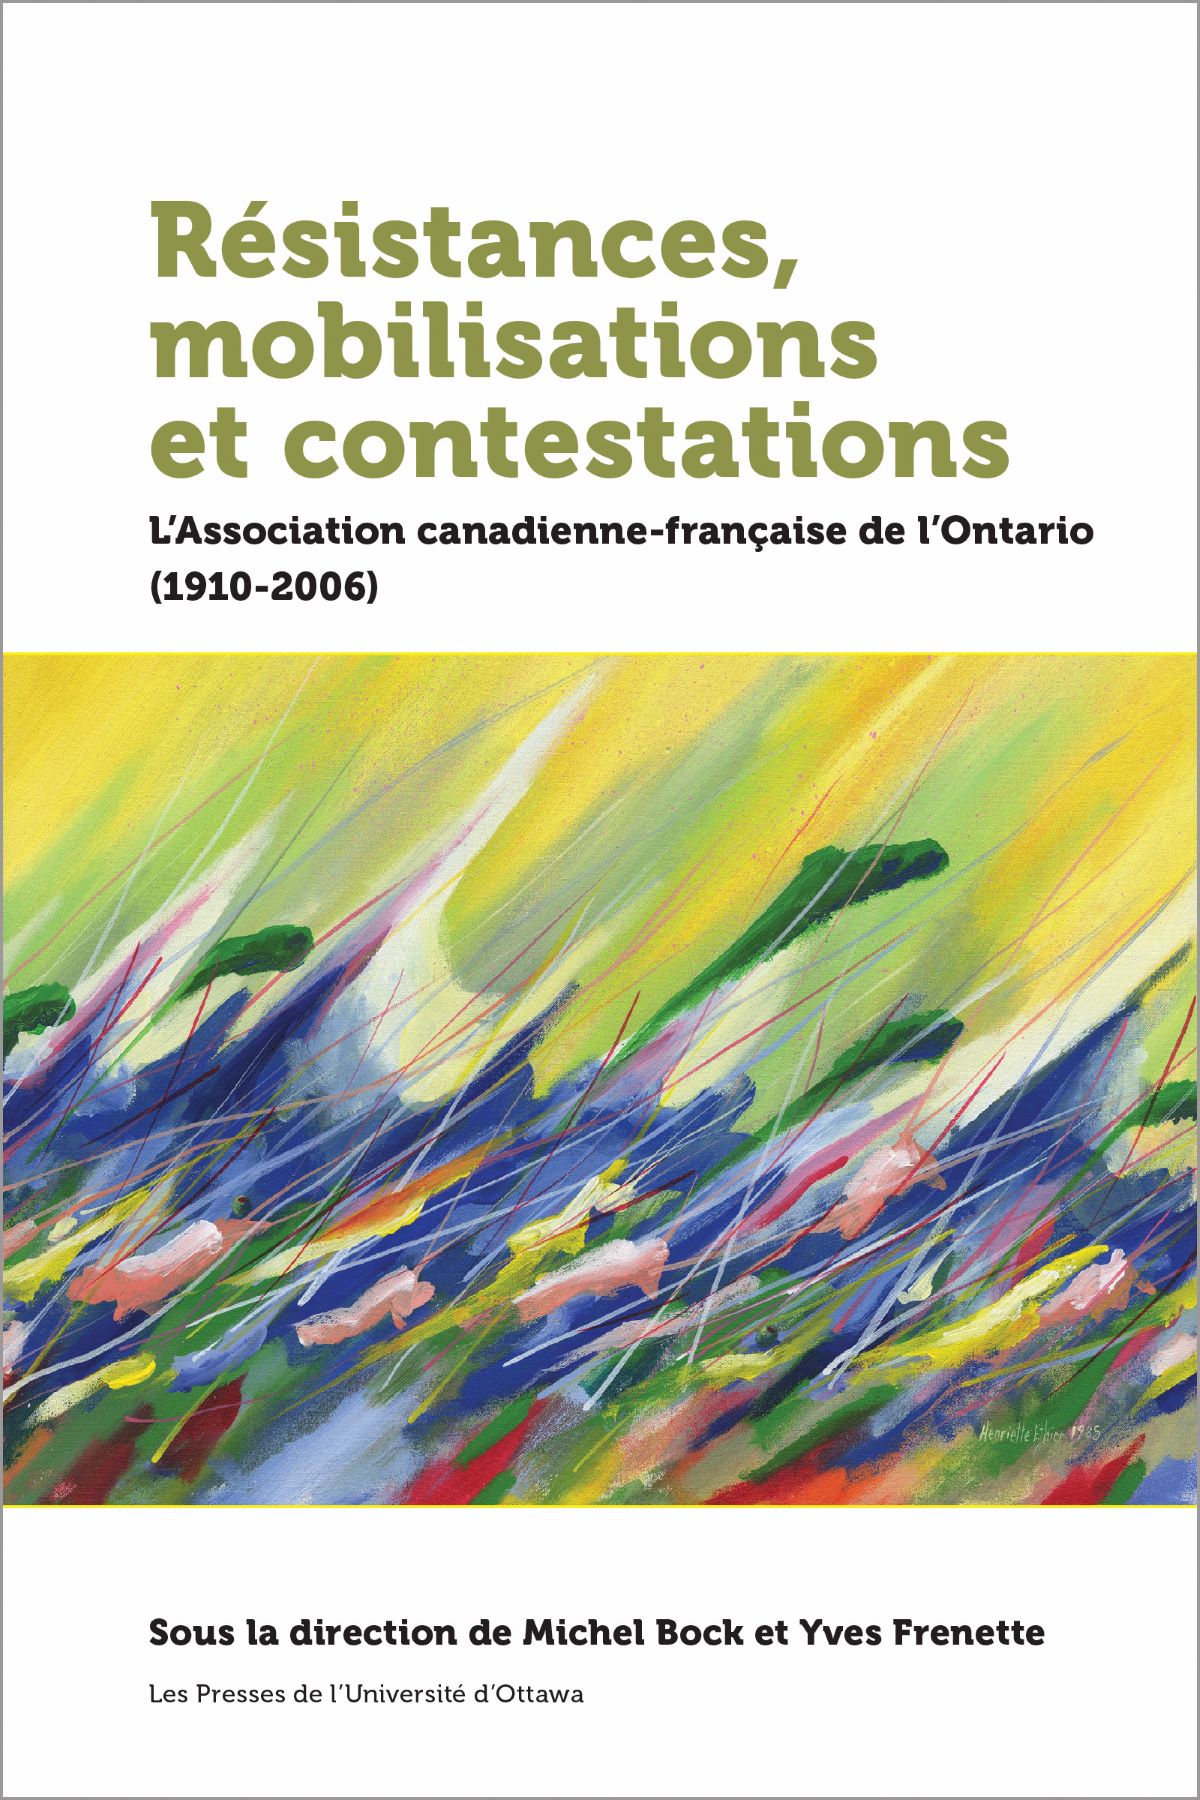 Couverture du livre Résistances, mobilisations et contestations avec une toile contemporaine dans des teintes de jaune vif, de vert et de bleu.